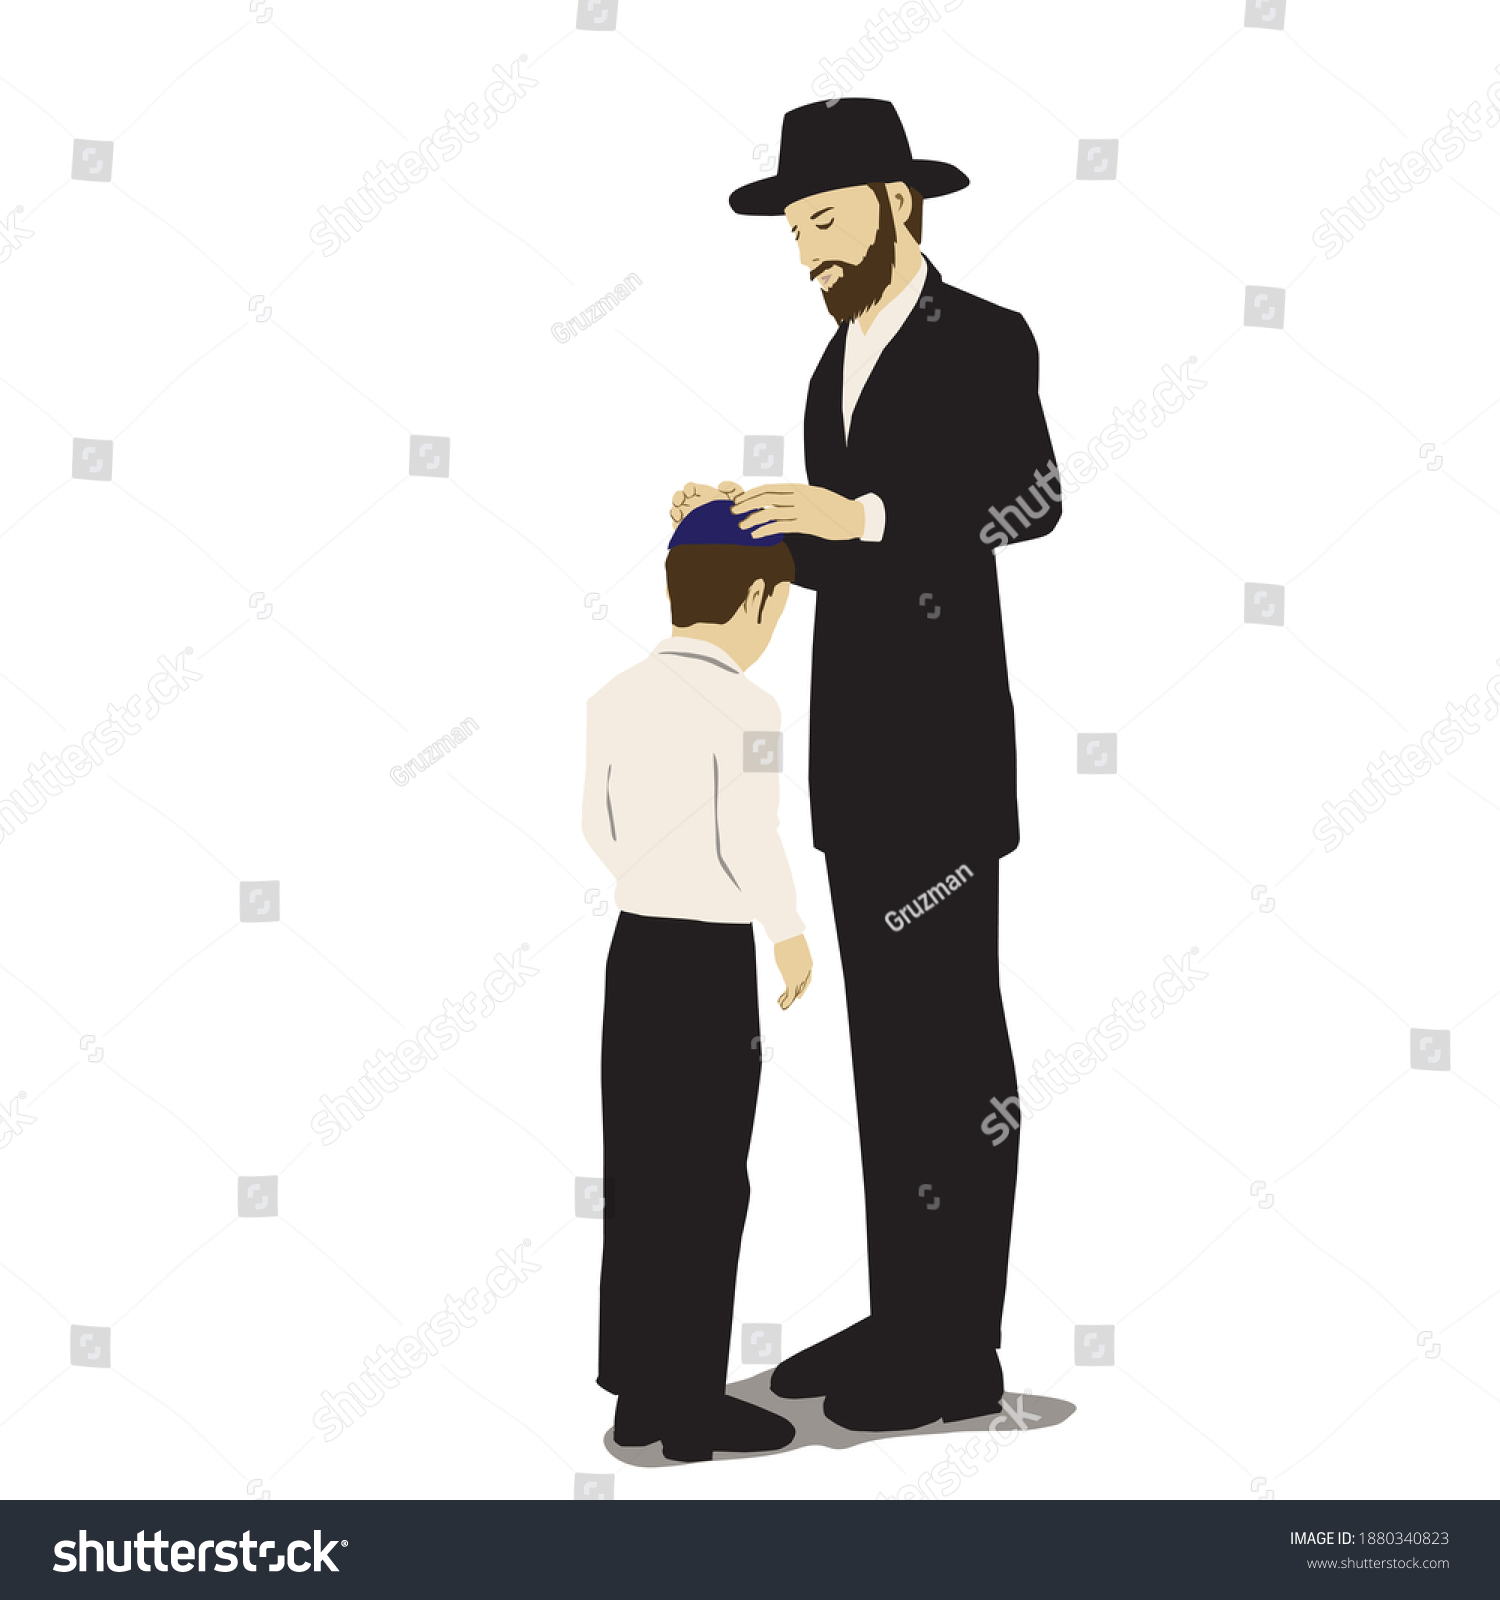 ברכת הבנים אבא מברך את בנו מנים שם ידיו על ראשו ידיים על הראש של הילד עם כיפה -1880340823.jpg